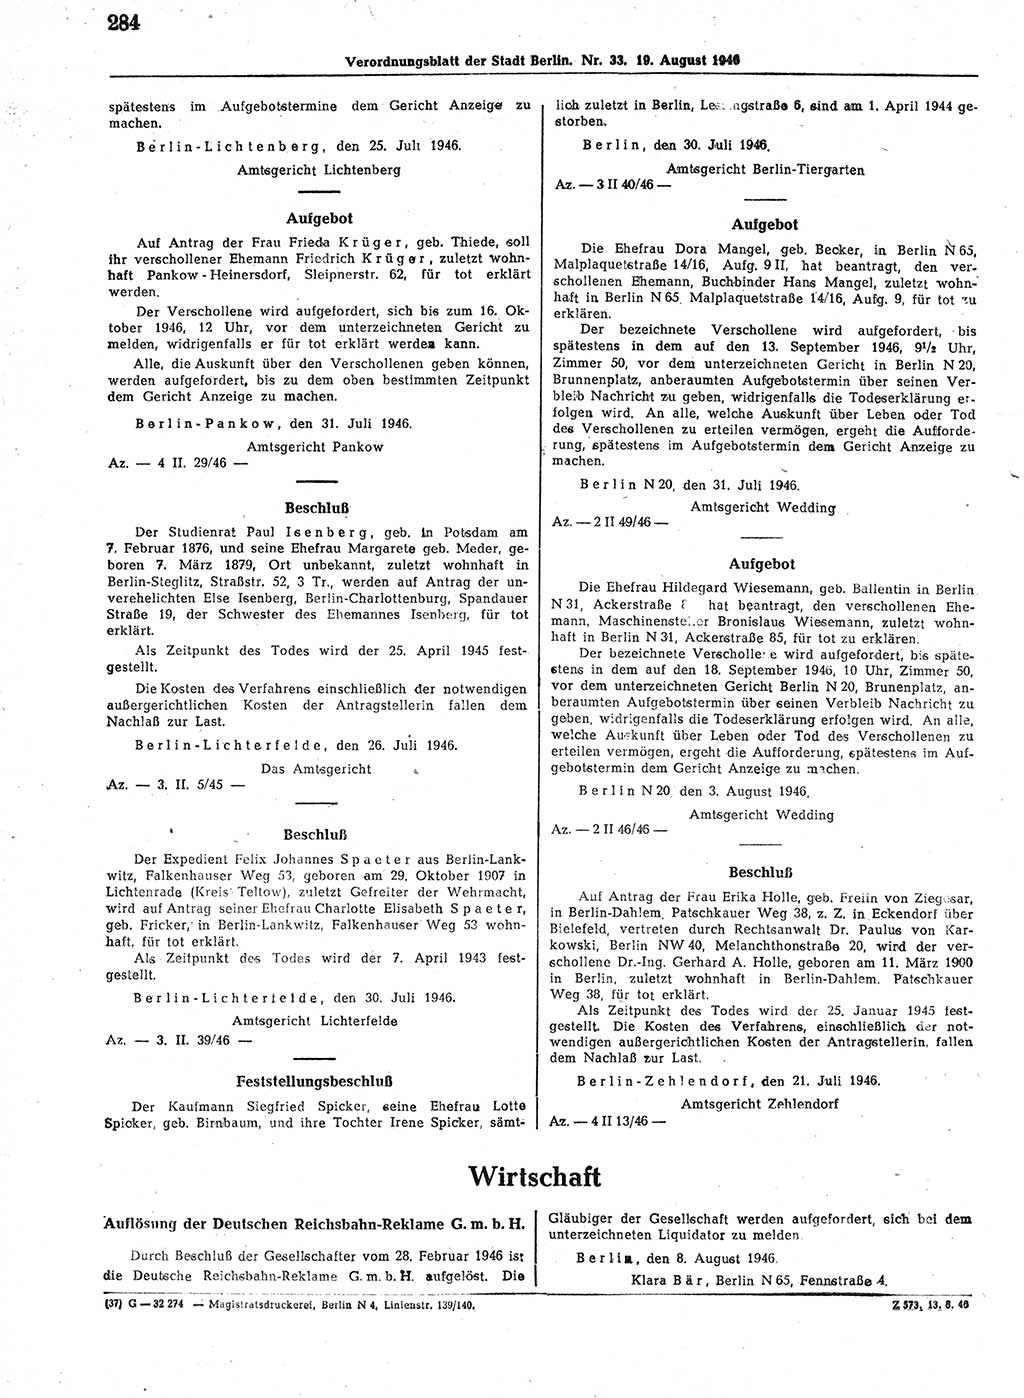 Verordnungsblatt (VOBl.) der Stadt Berlin, für Groß-Berlin 1946, Seite 284 (VOBl. Bln. 1946, S. 284)